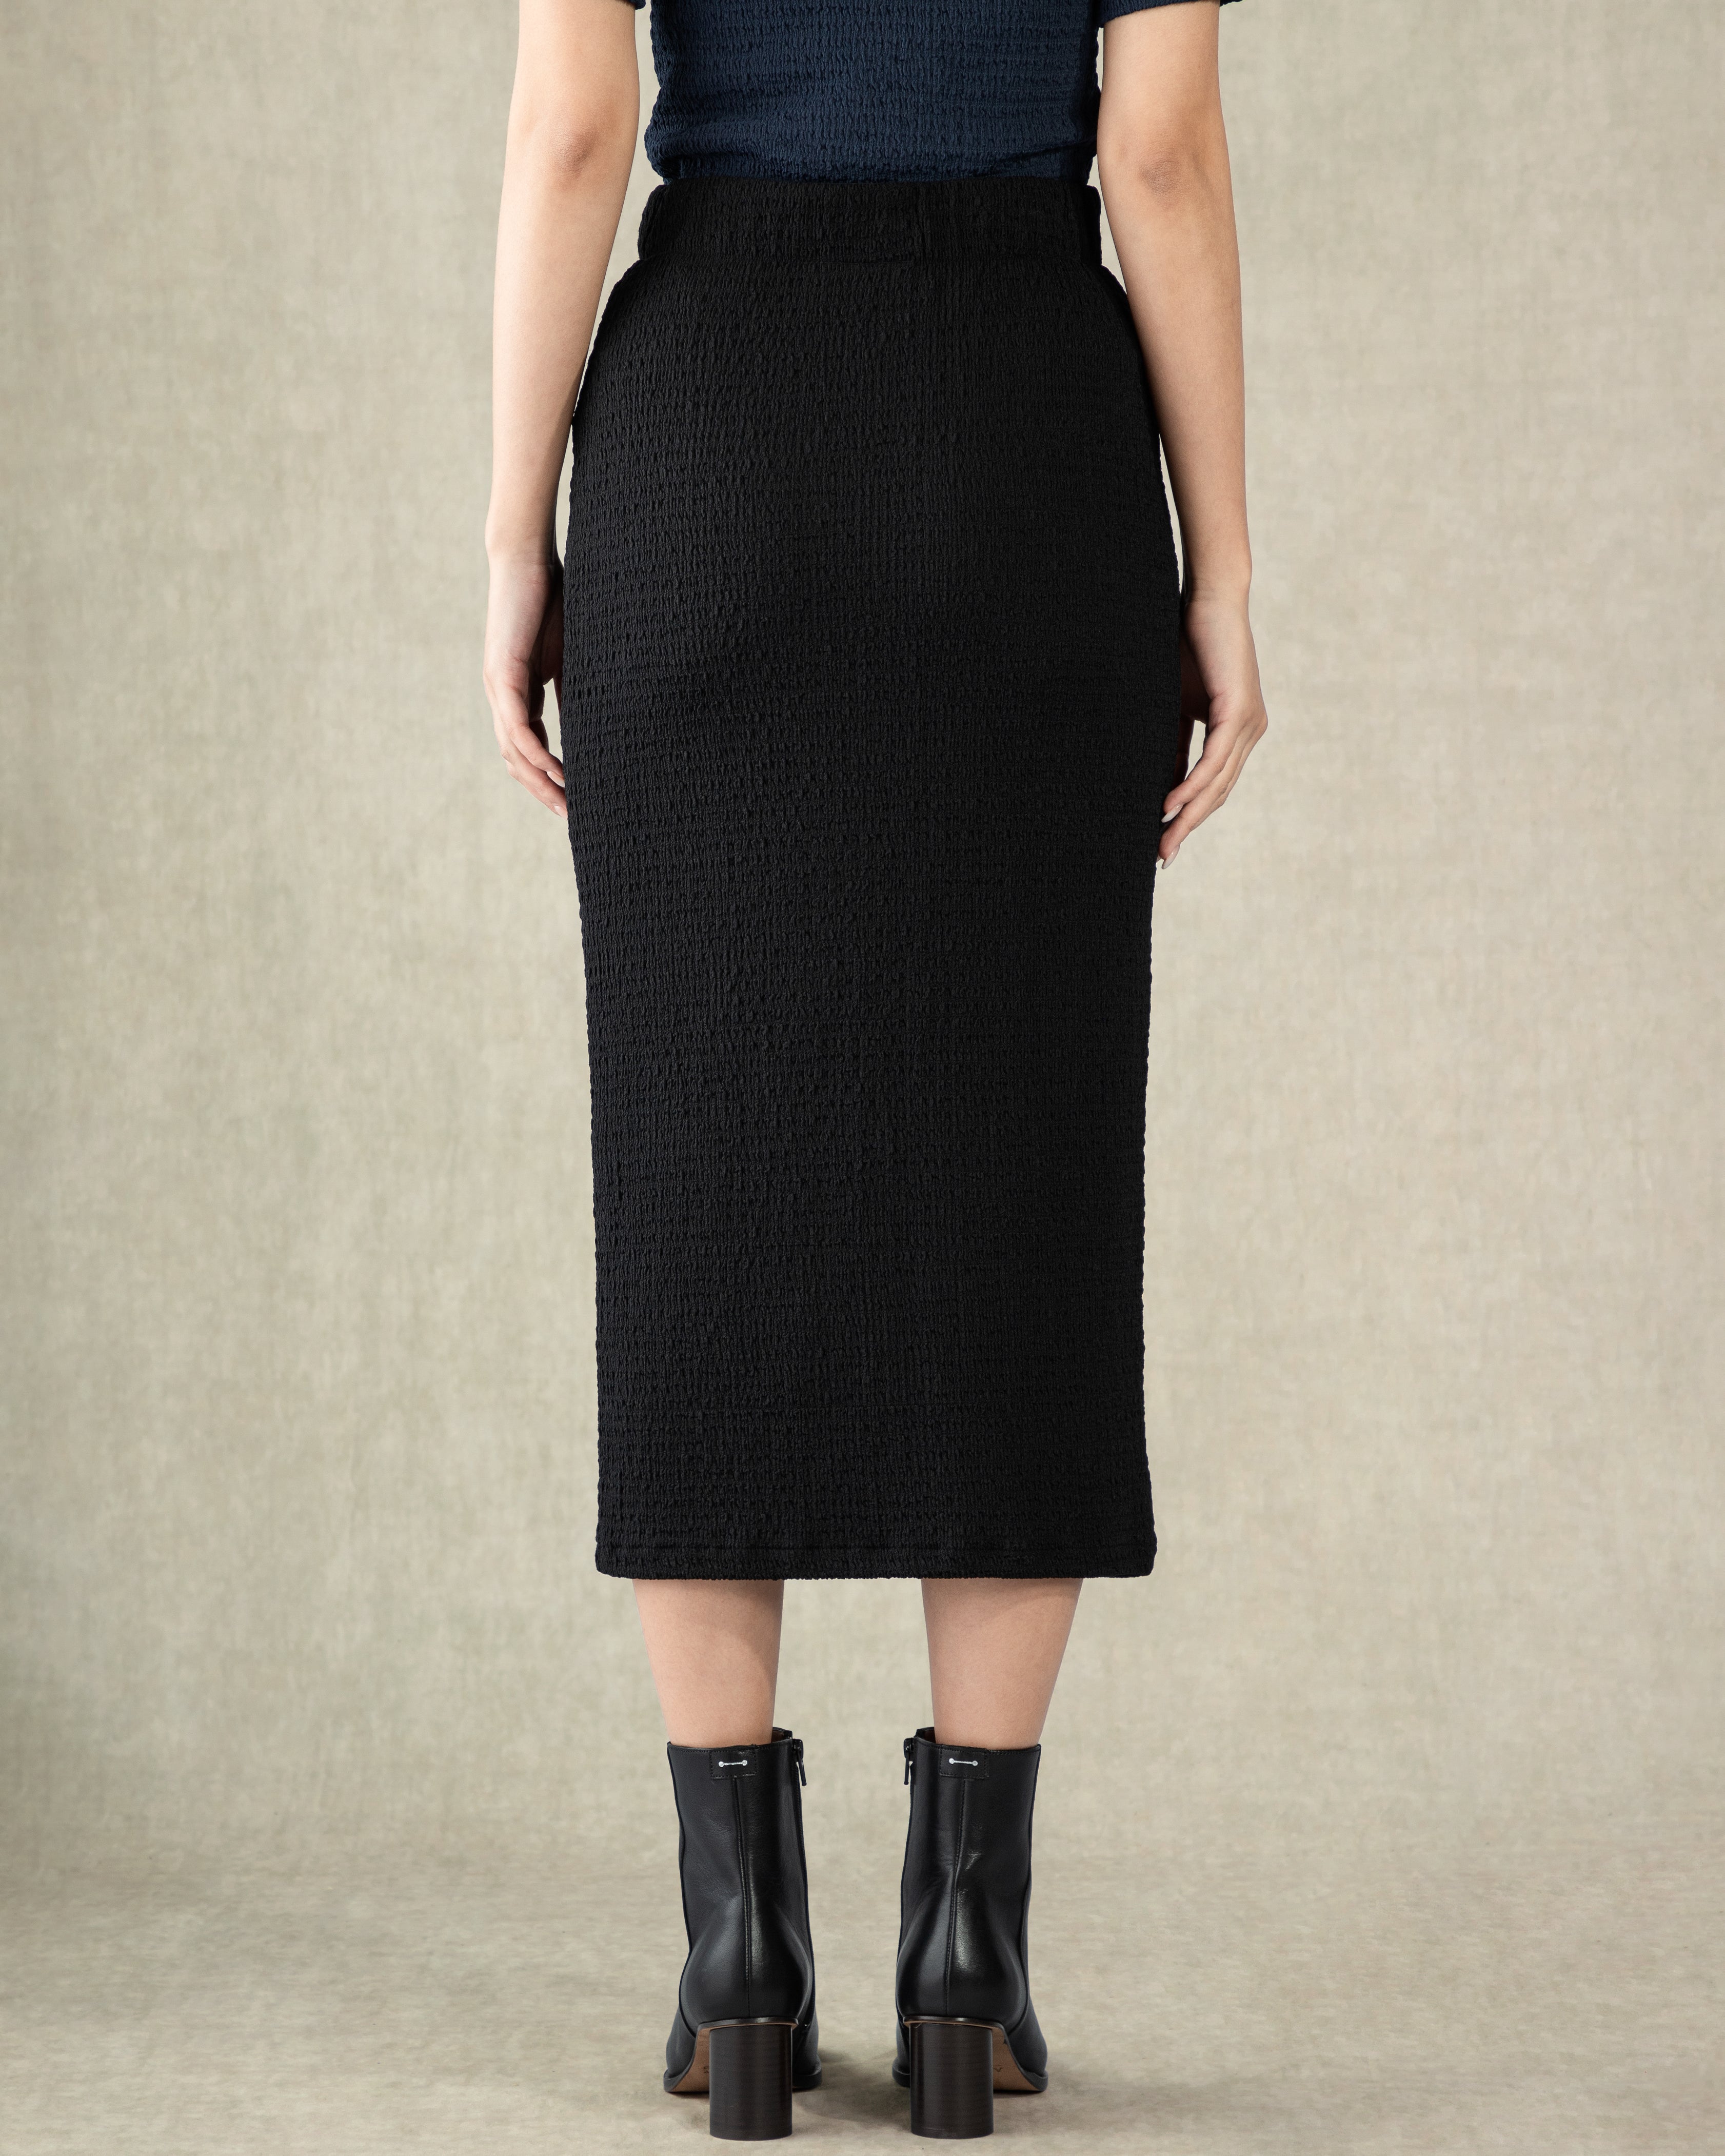 Moonless Night Elastic Waistband Skirt Womens Textured Long Skirt